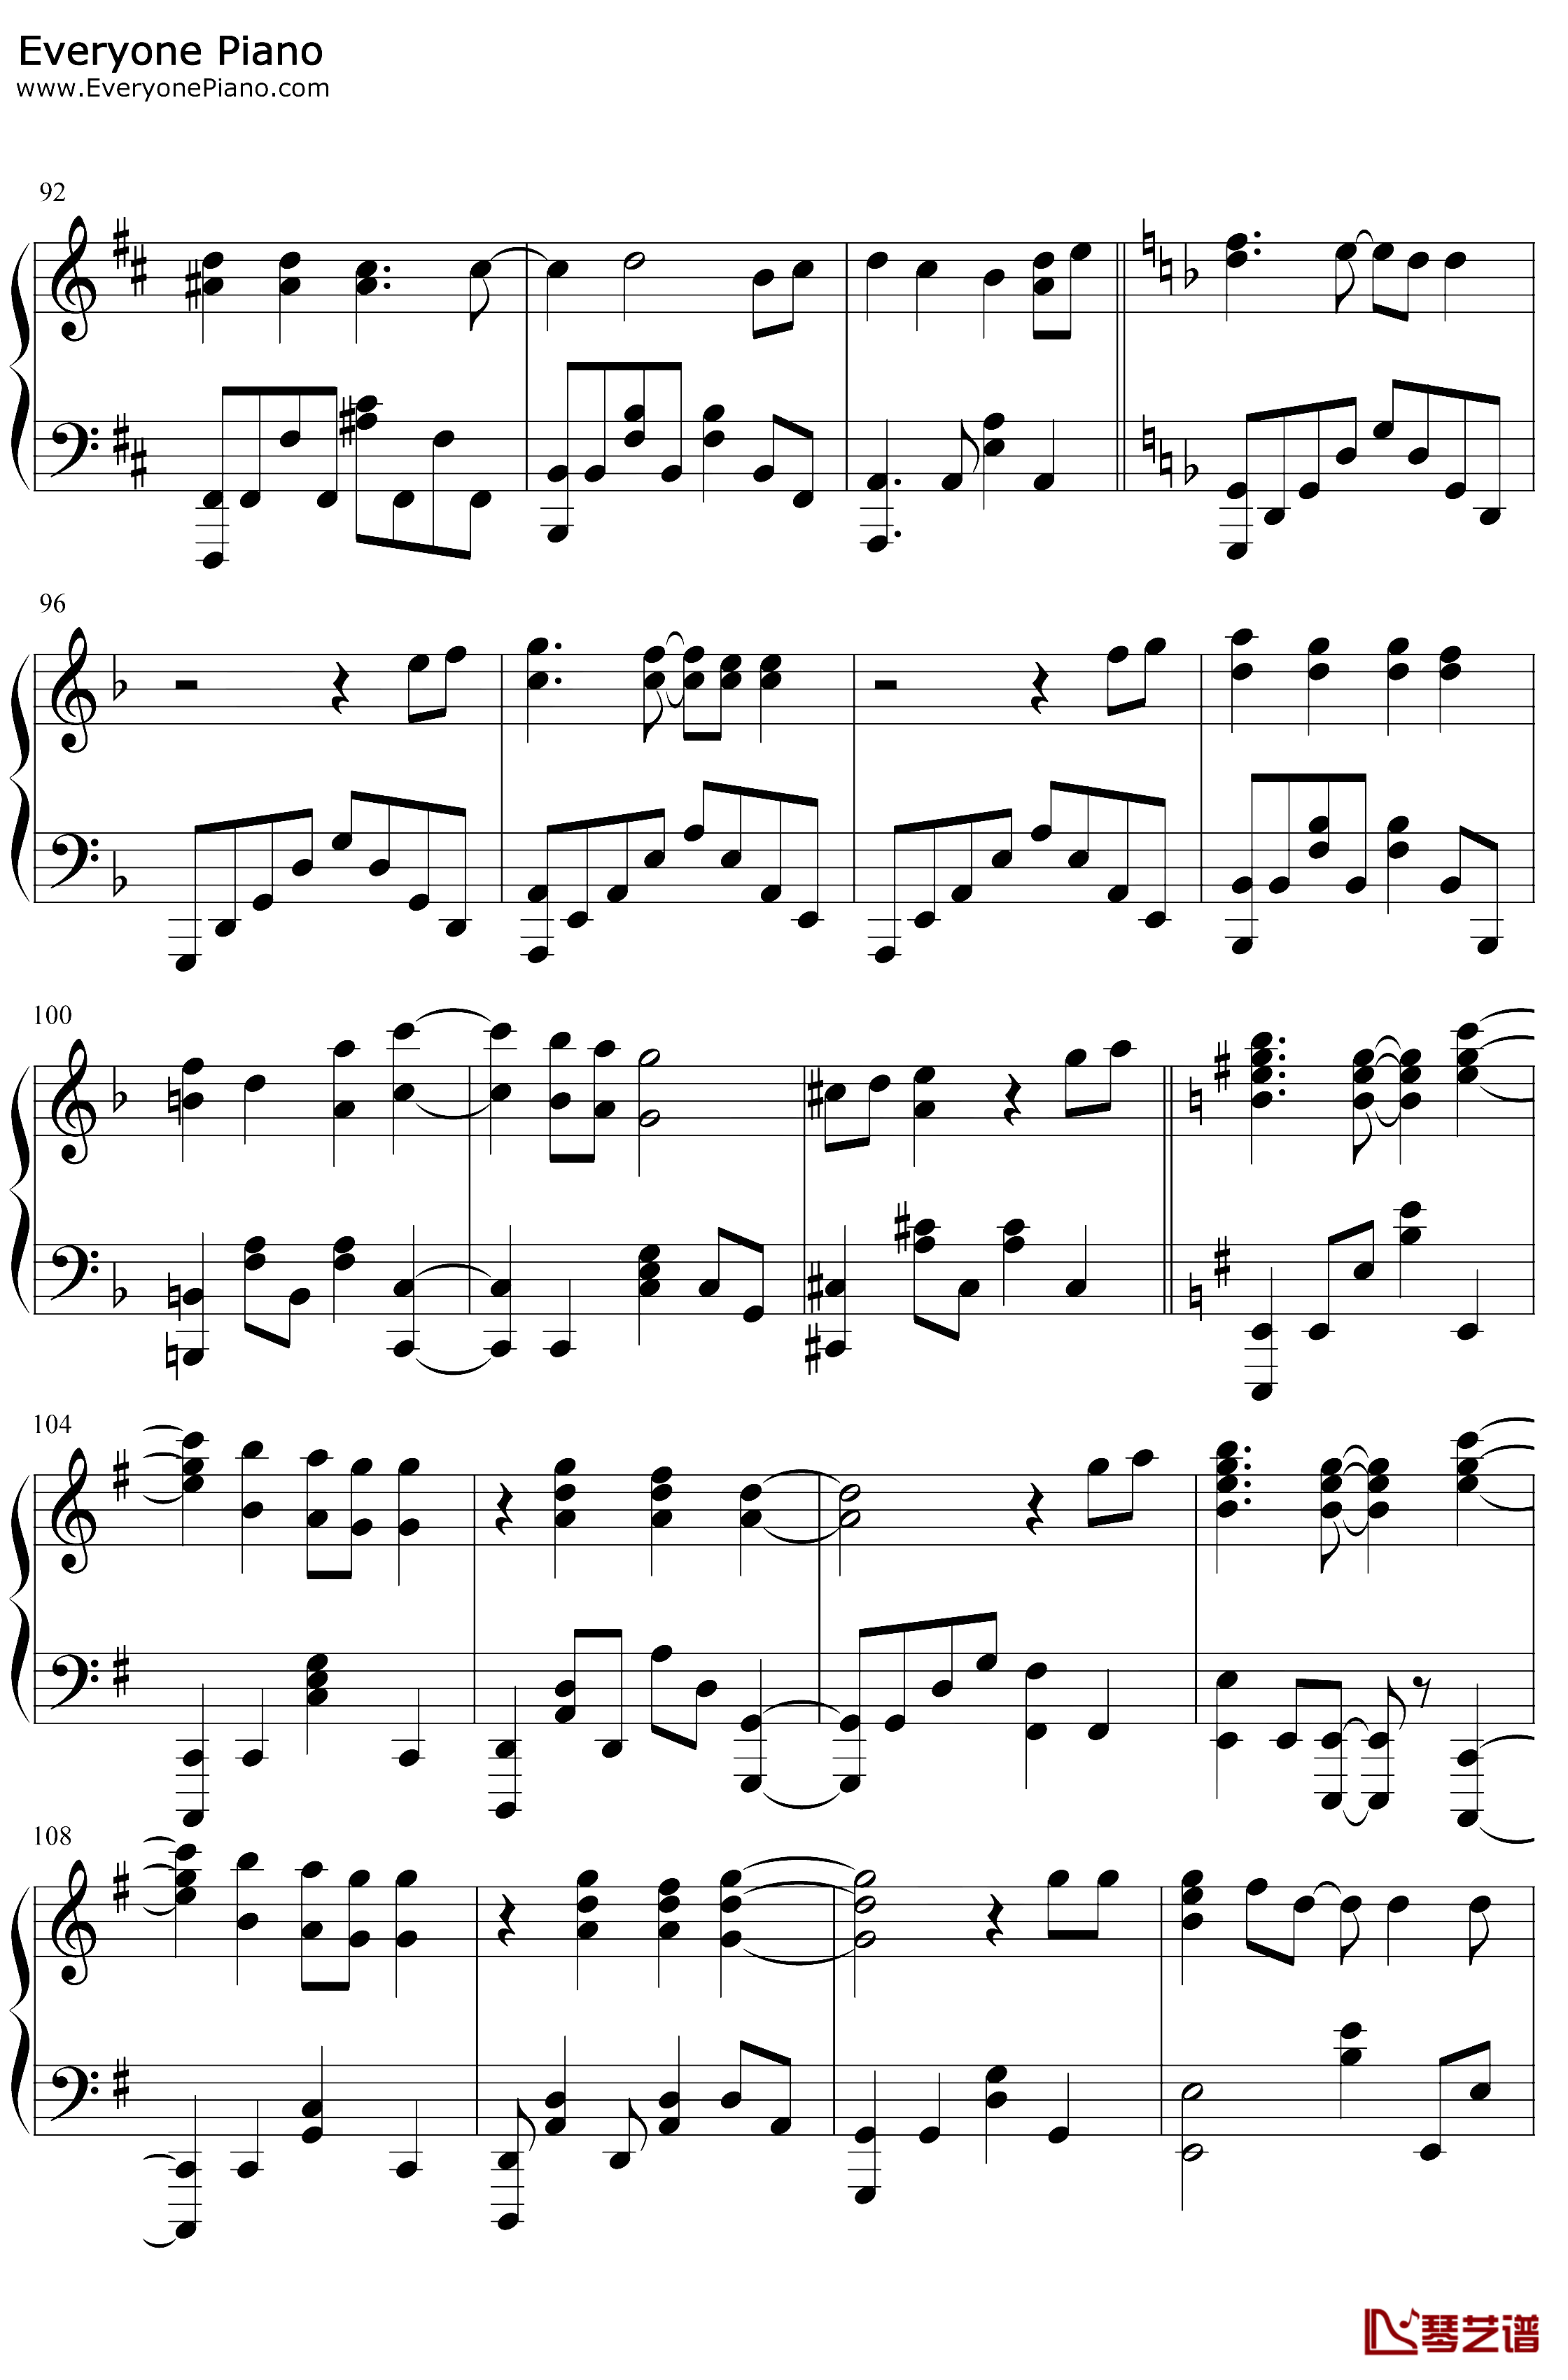 炎钢琴谱-LiSA-鬼灭之刃无限列车篇主题曲6